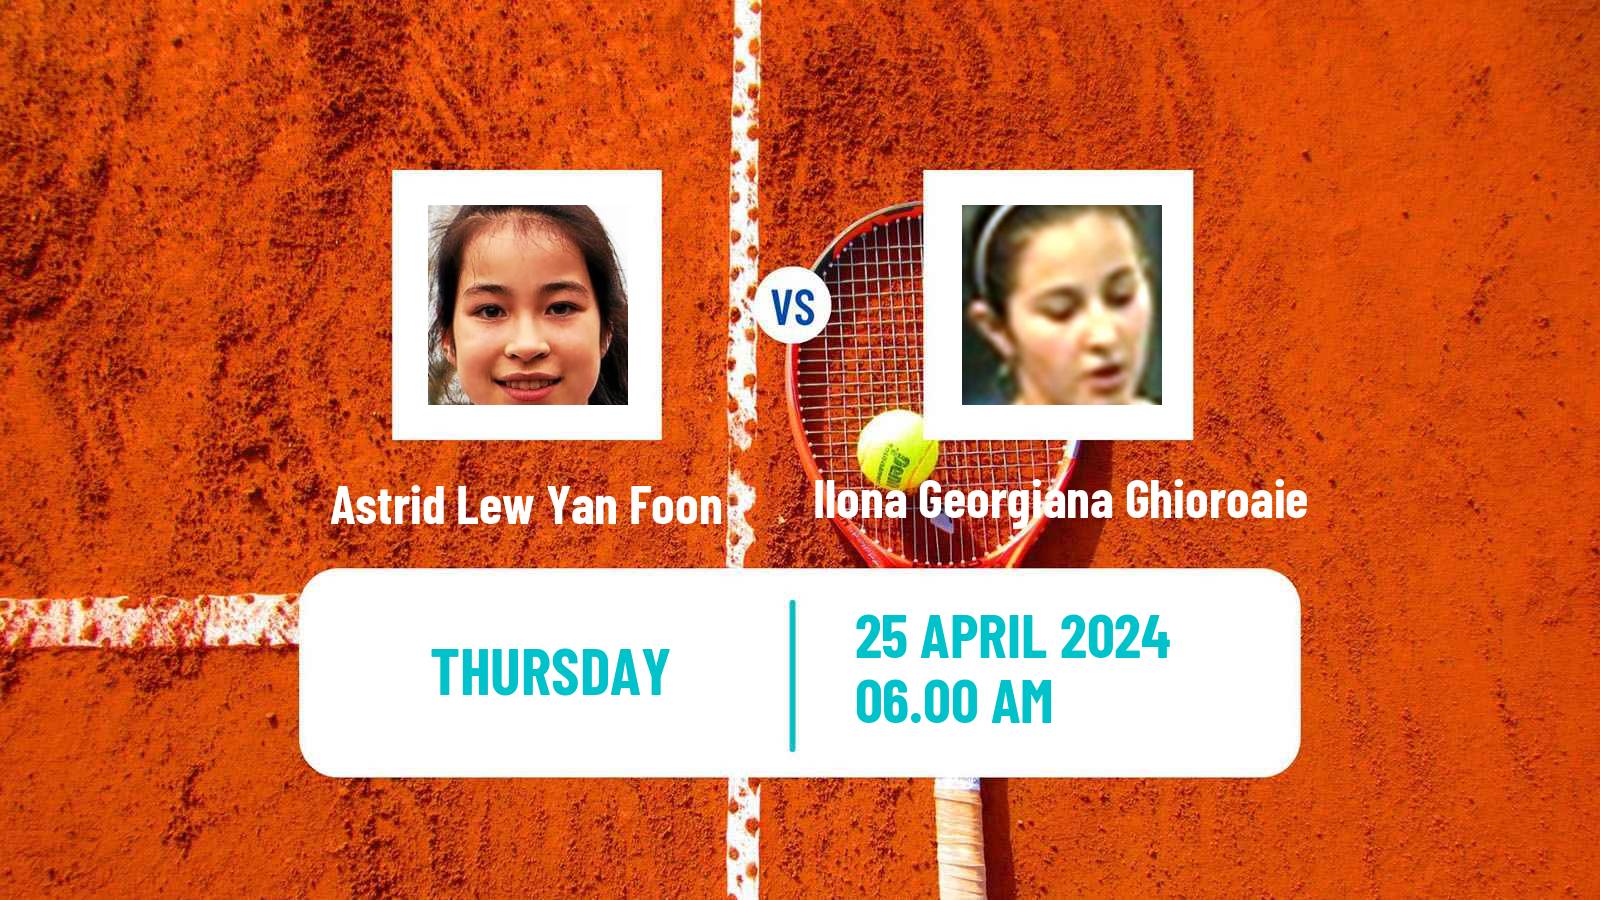 Tennis ITF W35 Hammamet 6 Women Astrid Lew Yan Foon - Ilona Georgiana Ghioroaie